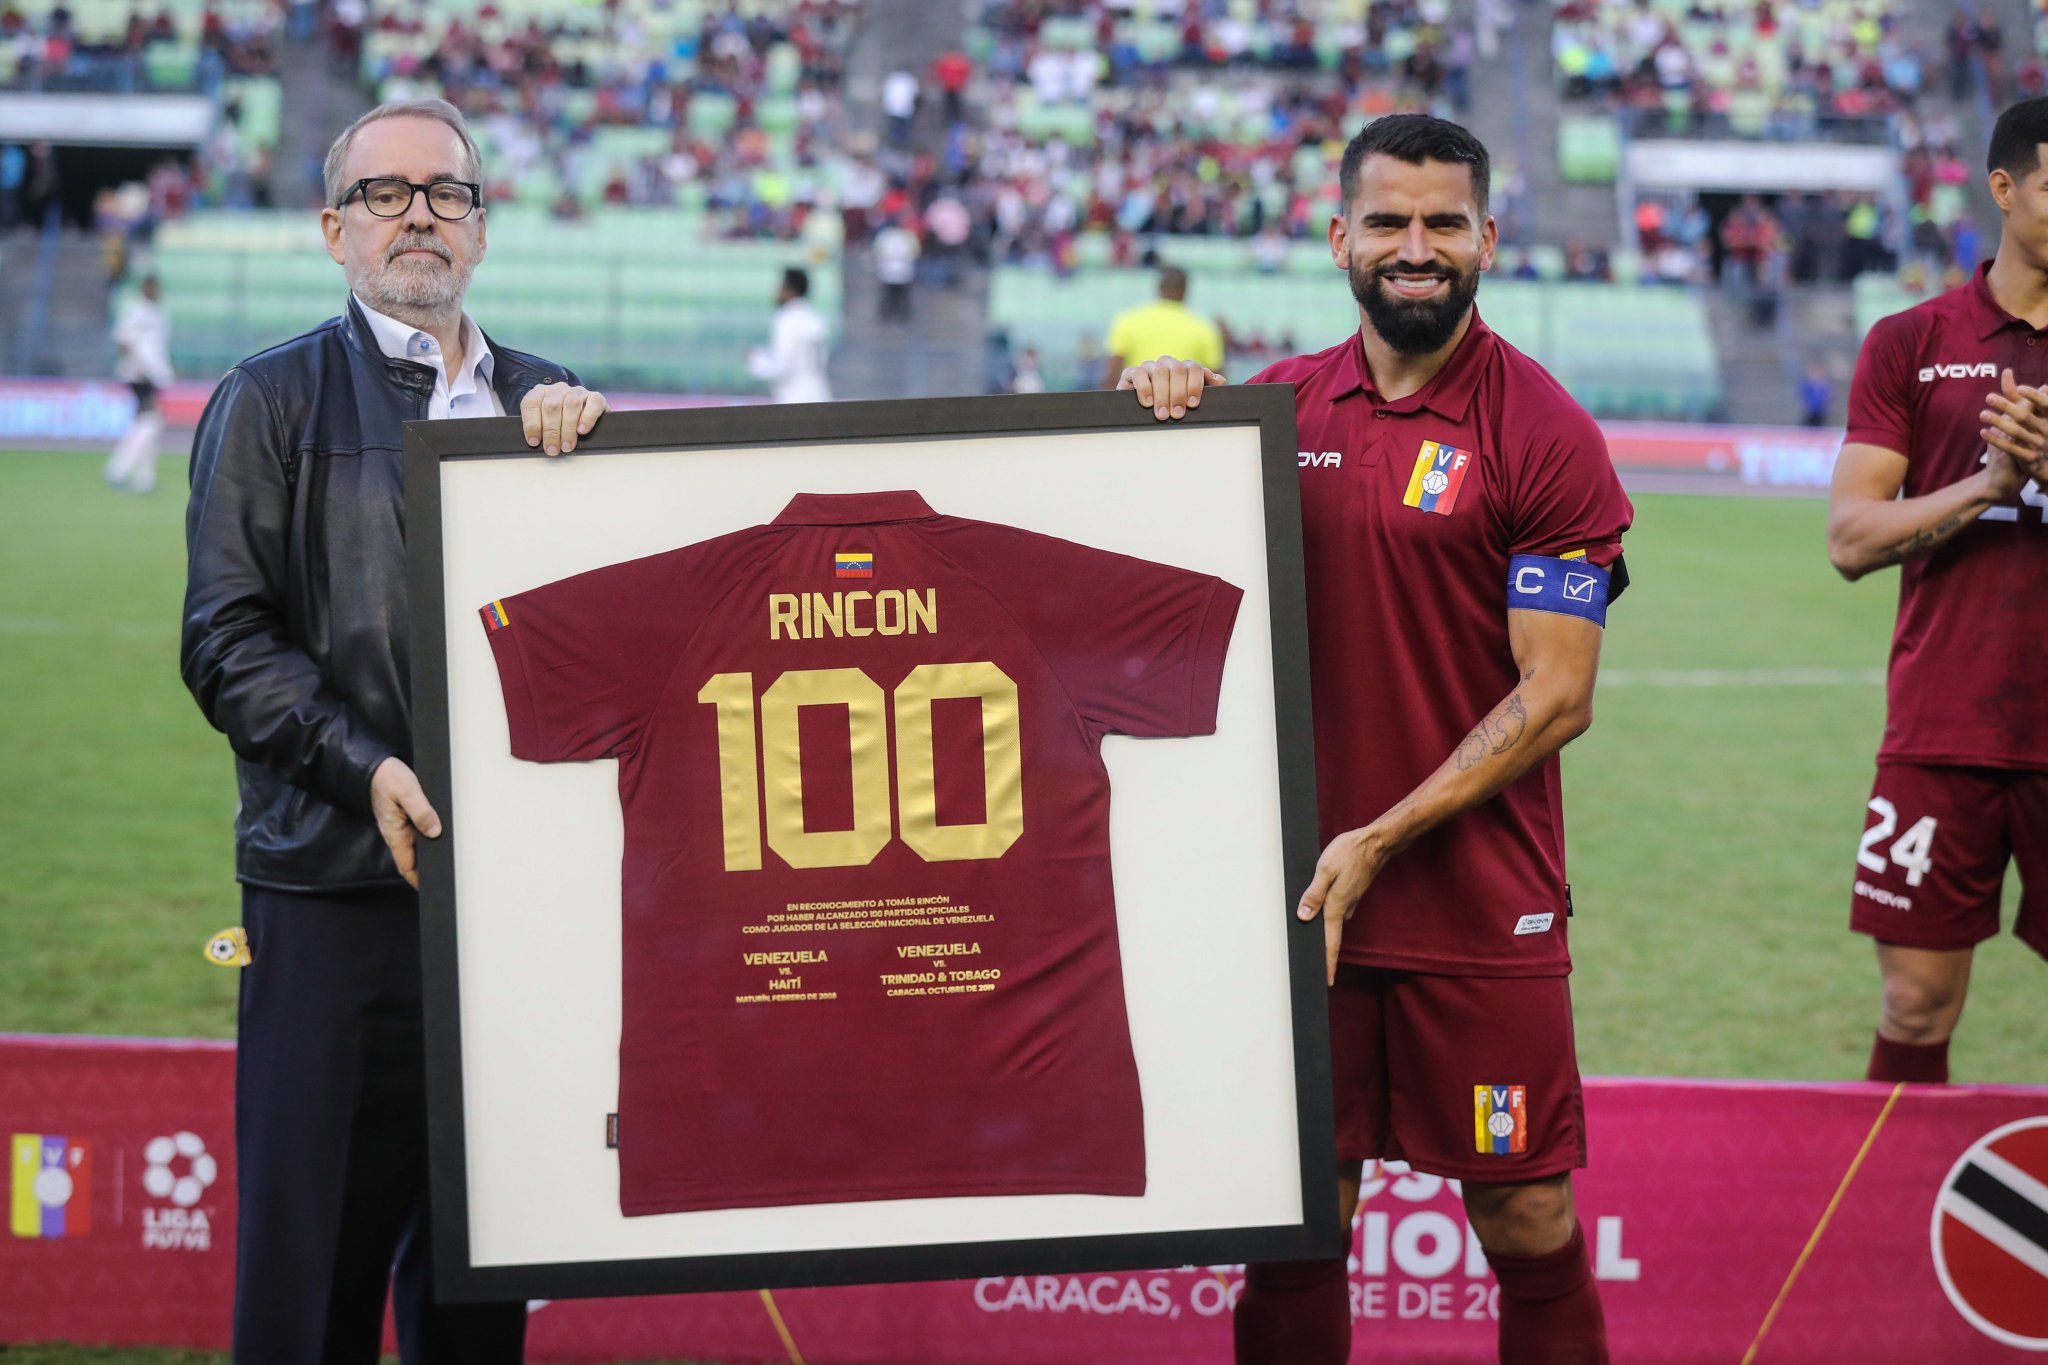 Capitán y motor de la selección: Tomás Rincón alcanzó 100 partidos vestido de vinotinto | Contrapunto.com